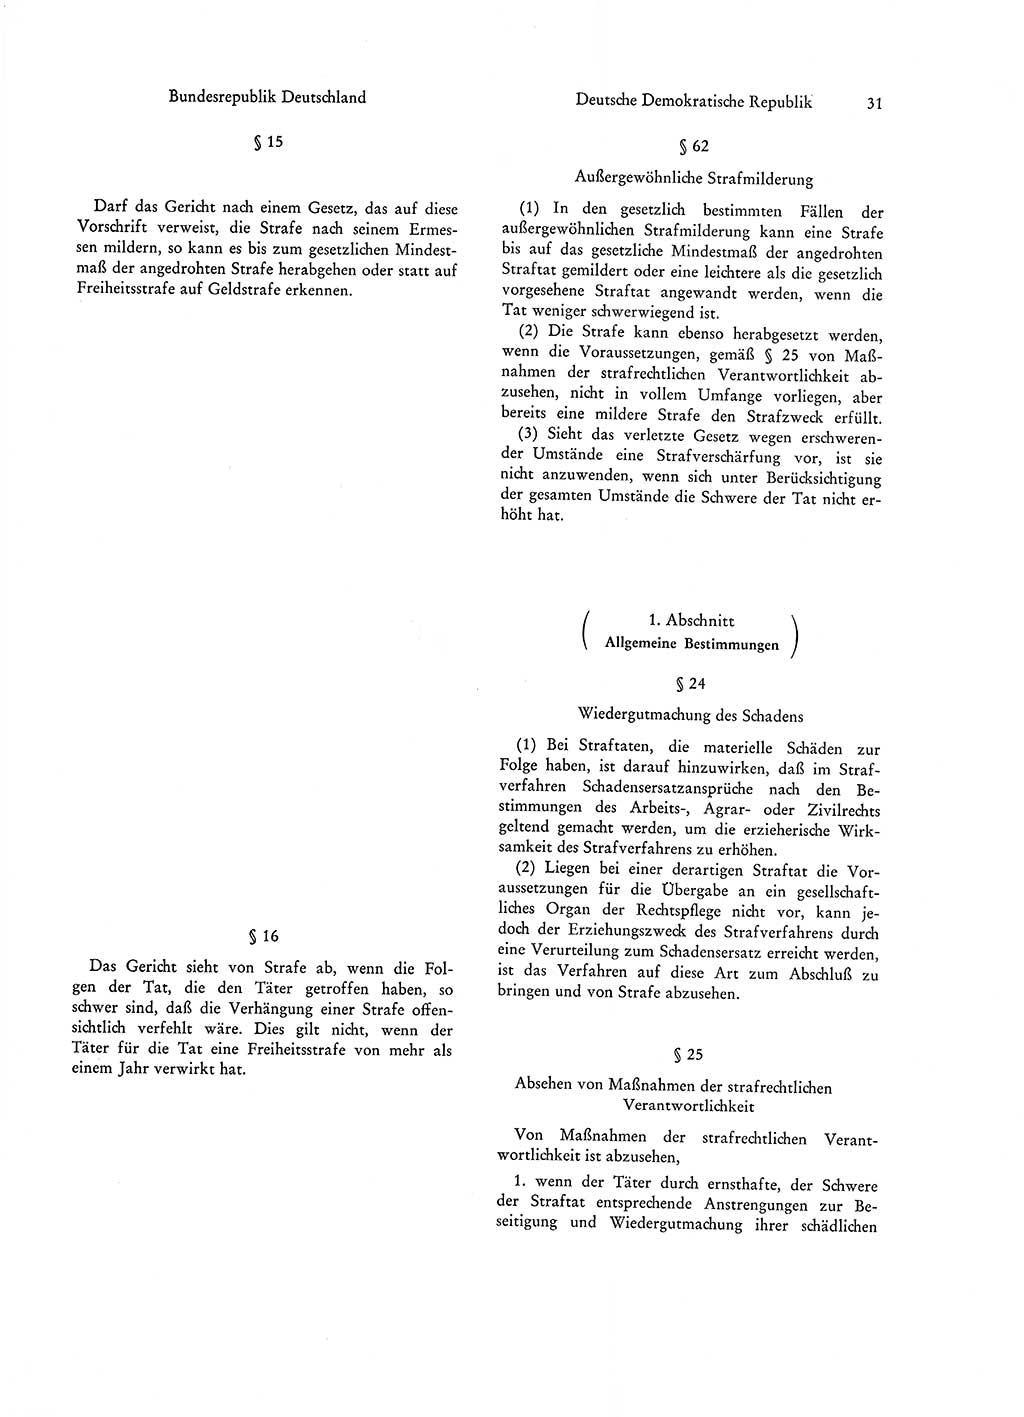 Strafgesetzgebung in Deutschland [Bundesrepublik Deutschland (BRD) und Deutsche Demokratische Republik (DDR)] 1972, Seite 31 (Str.-Ges. Dtl. StGB BRD DDR 1972, S. 31)